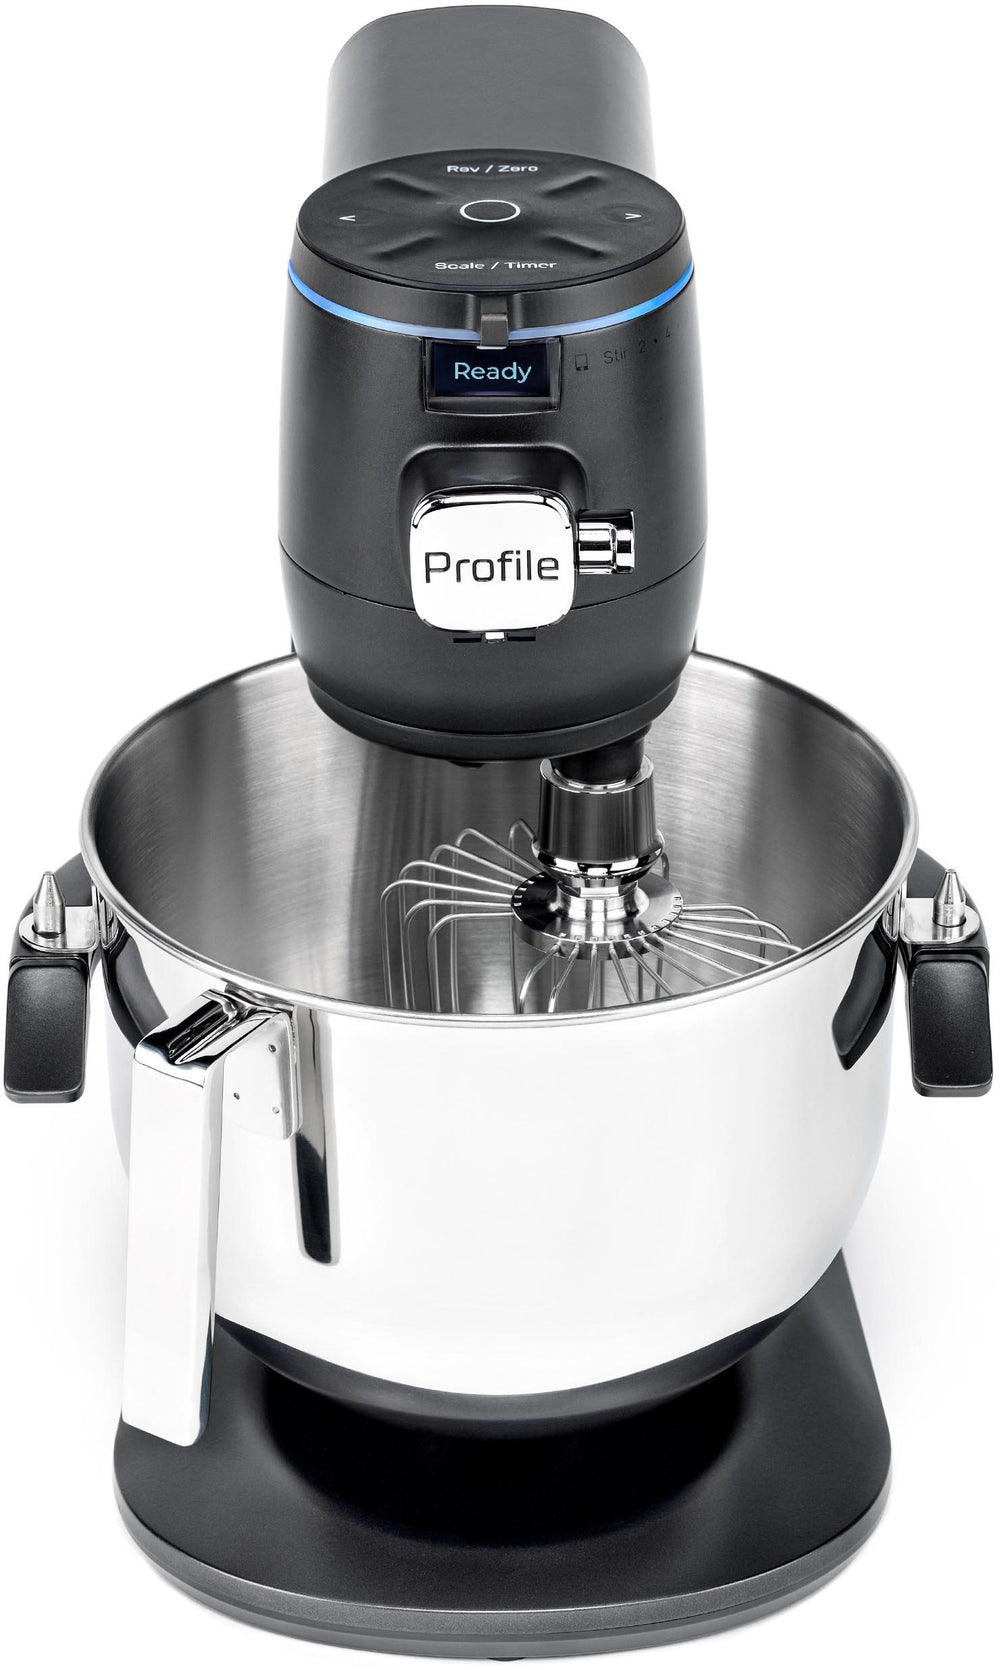 GE Profile - 7 Quart Bowl- Smart Stand Mixer with Auto Sense - Carbon Black_1